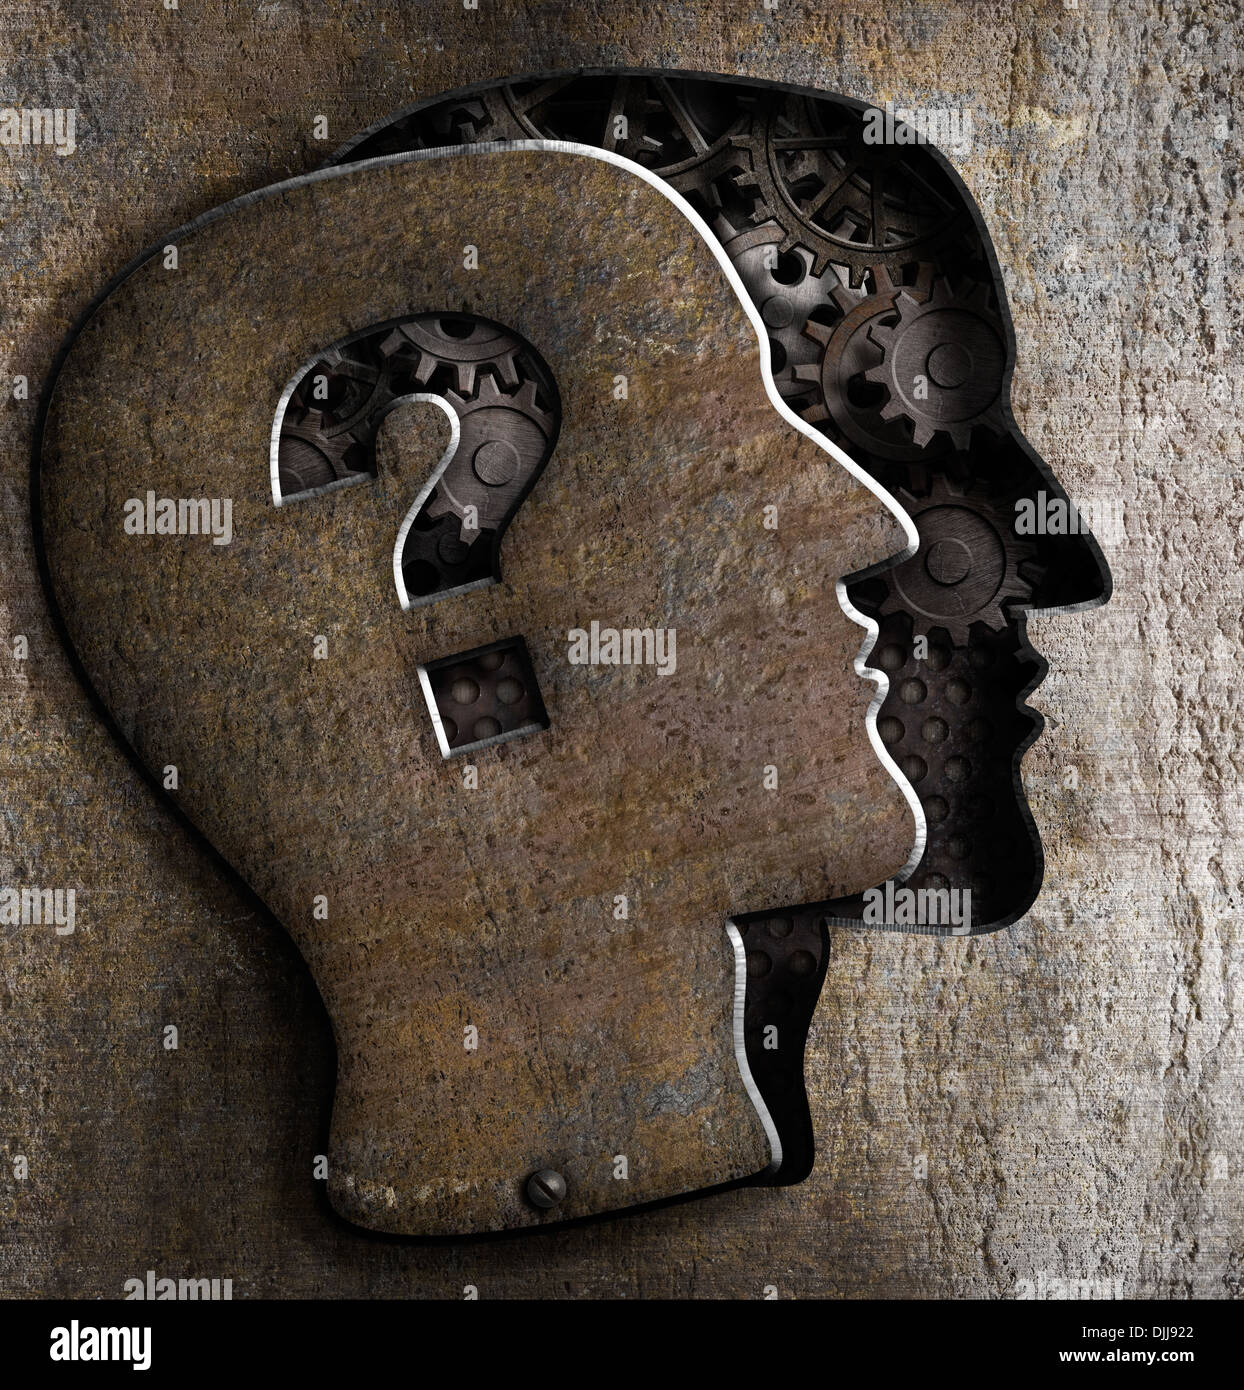 Cerveau humain ouvert avec point d'interrogation sur couvercle de métal Banque D'Images